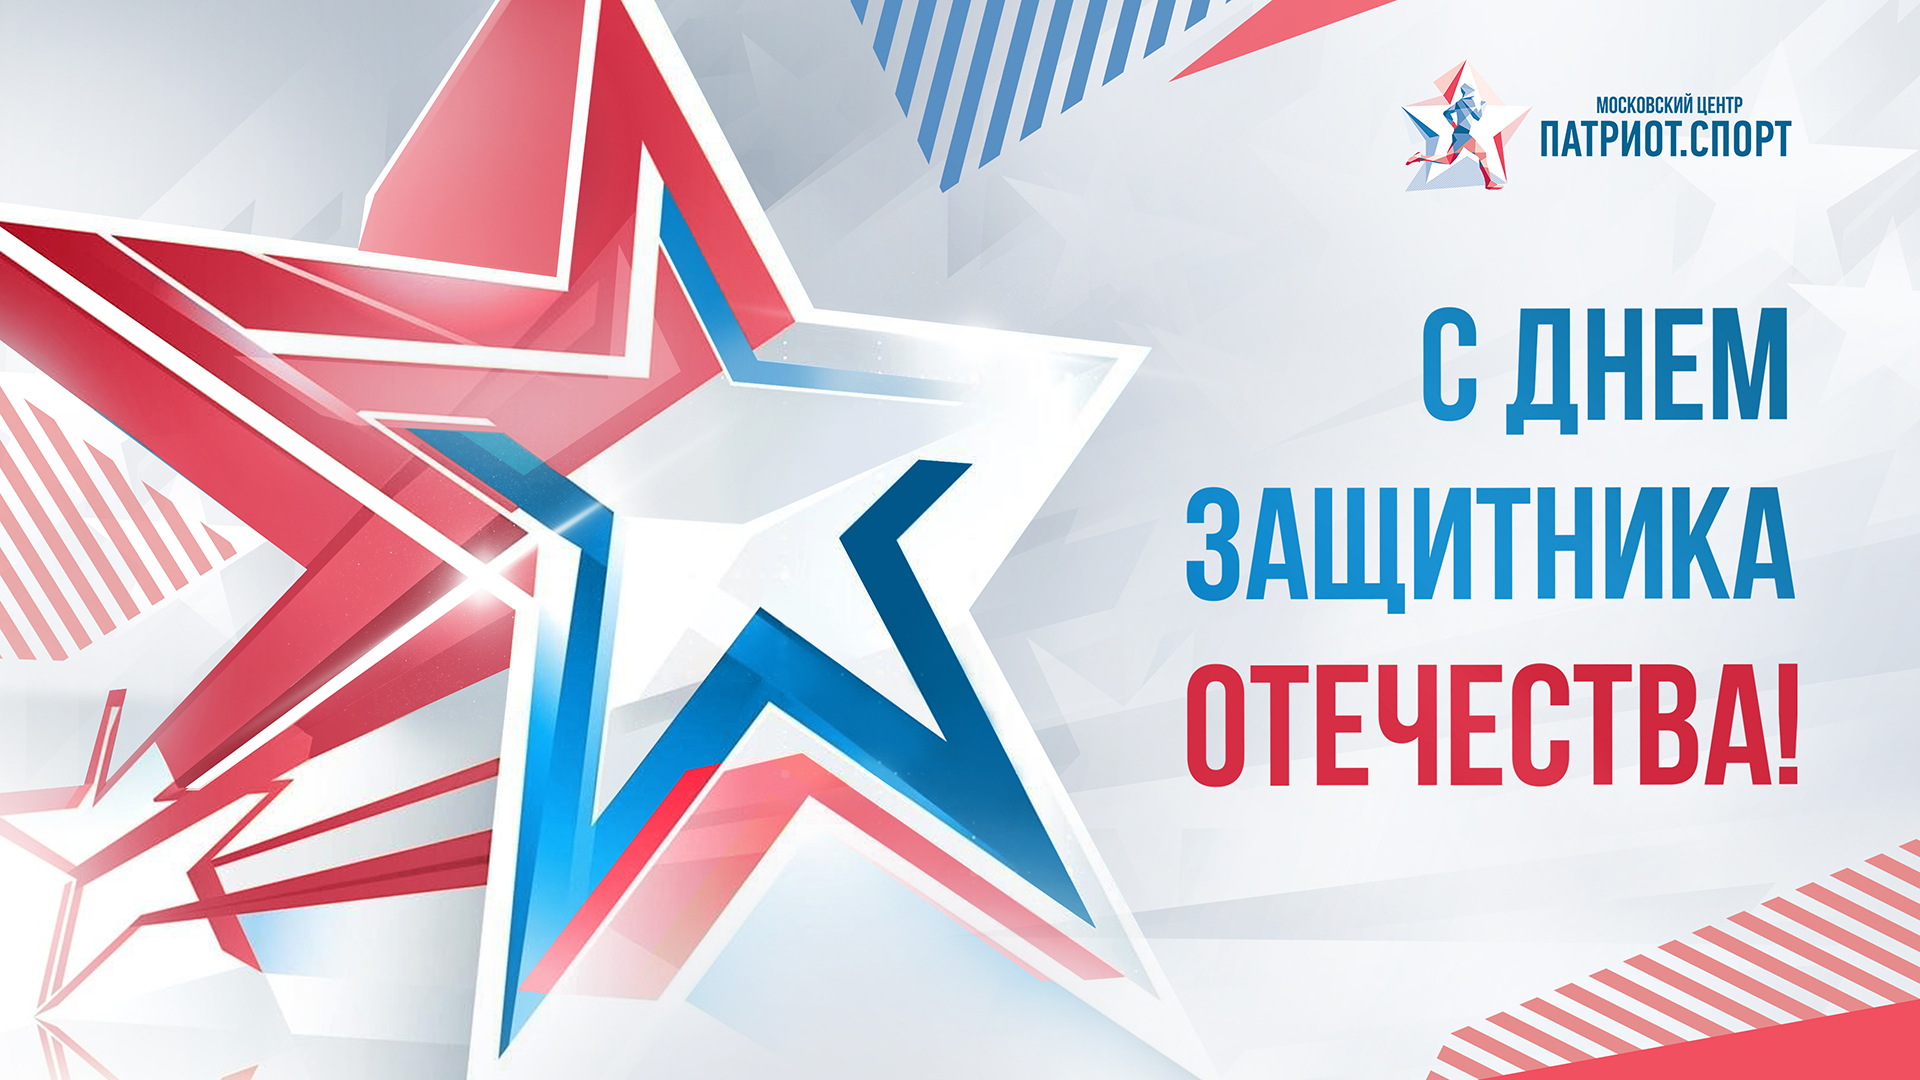 Московский центр «Патриот.Спорт» поздравляет с Днем защитника Отечества!